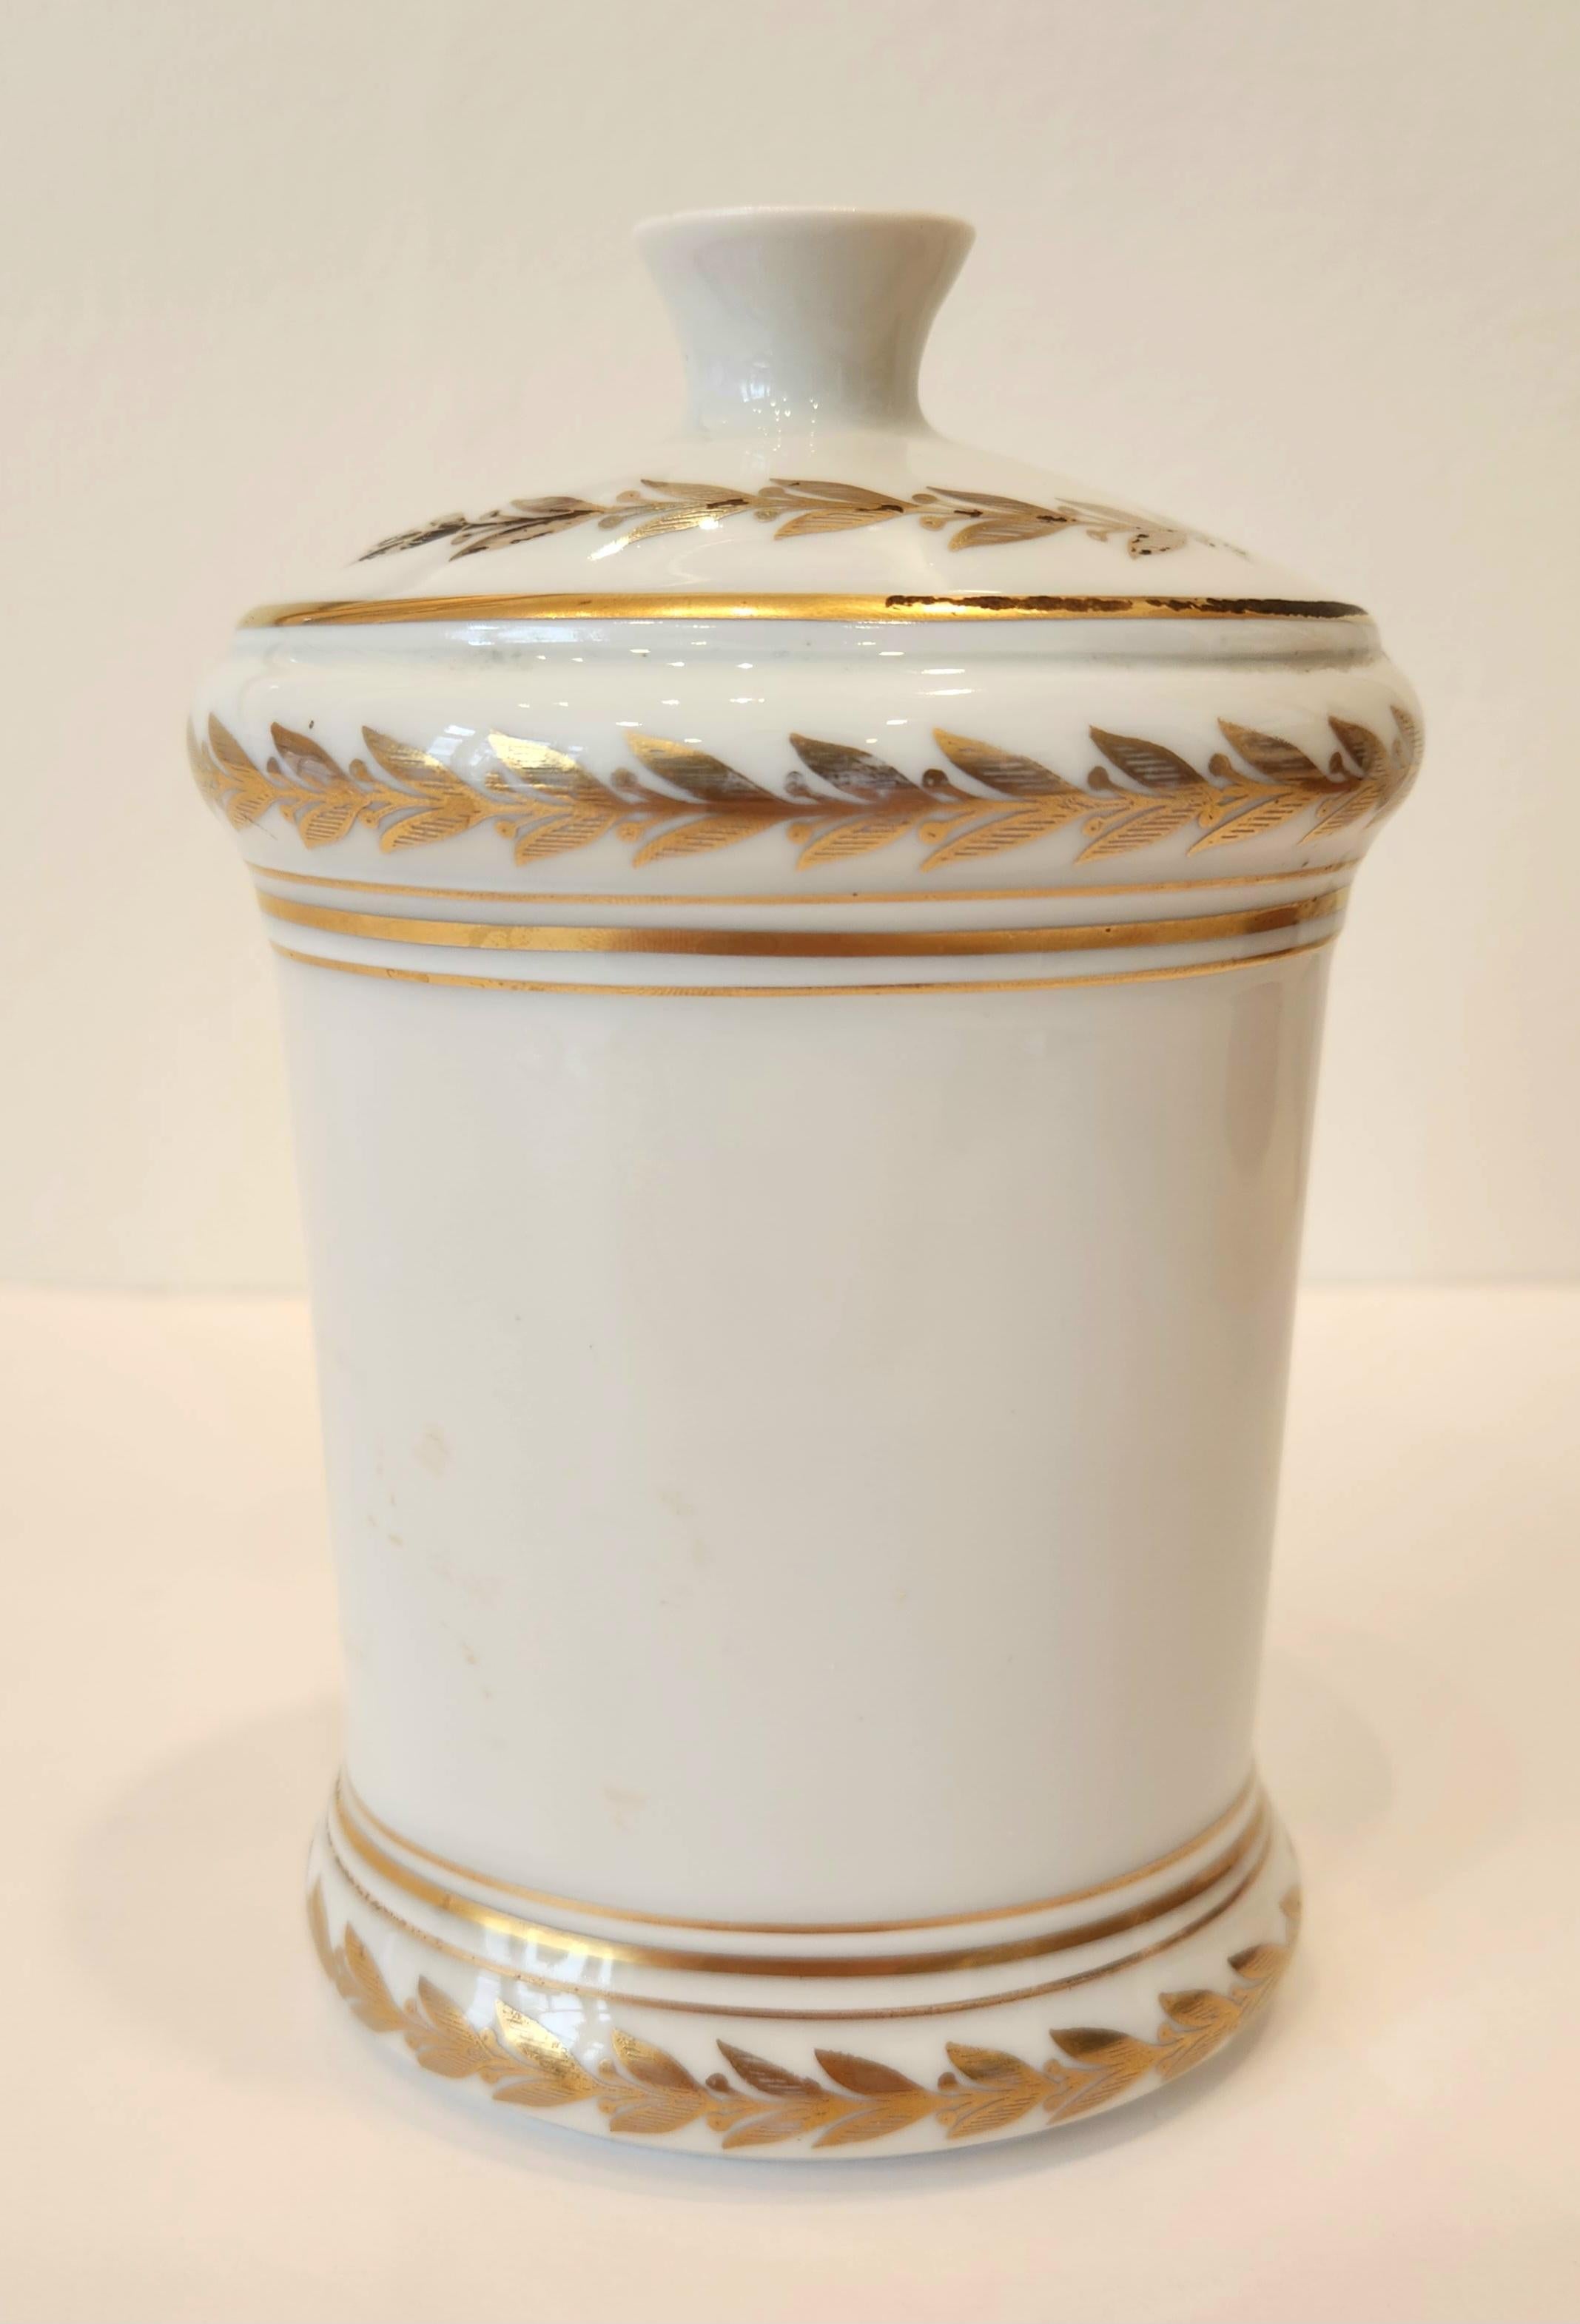 Hand Painted Porcelain Vase by Sevres - Romantic Sculpture by Manufacture Nationale de Sèvres